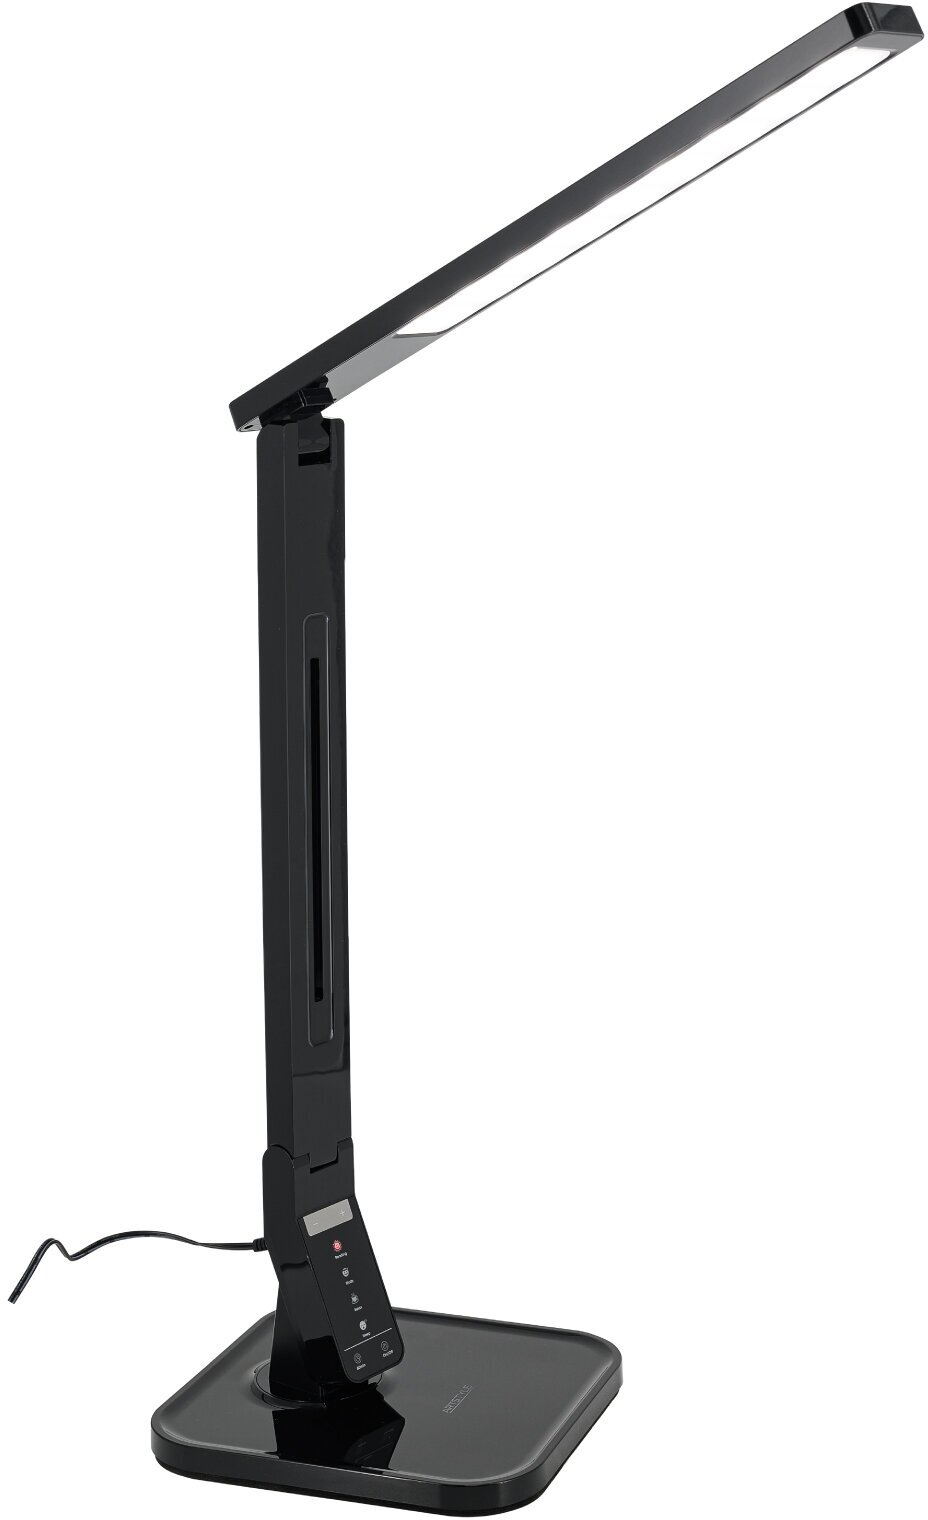 Настольная лампа Artstyle TL-259B черный с изм. цвет. тем-рой и USB-портом